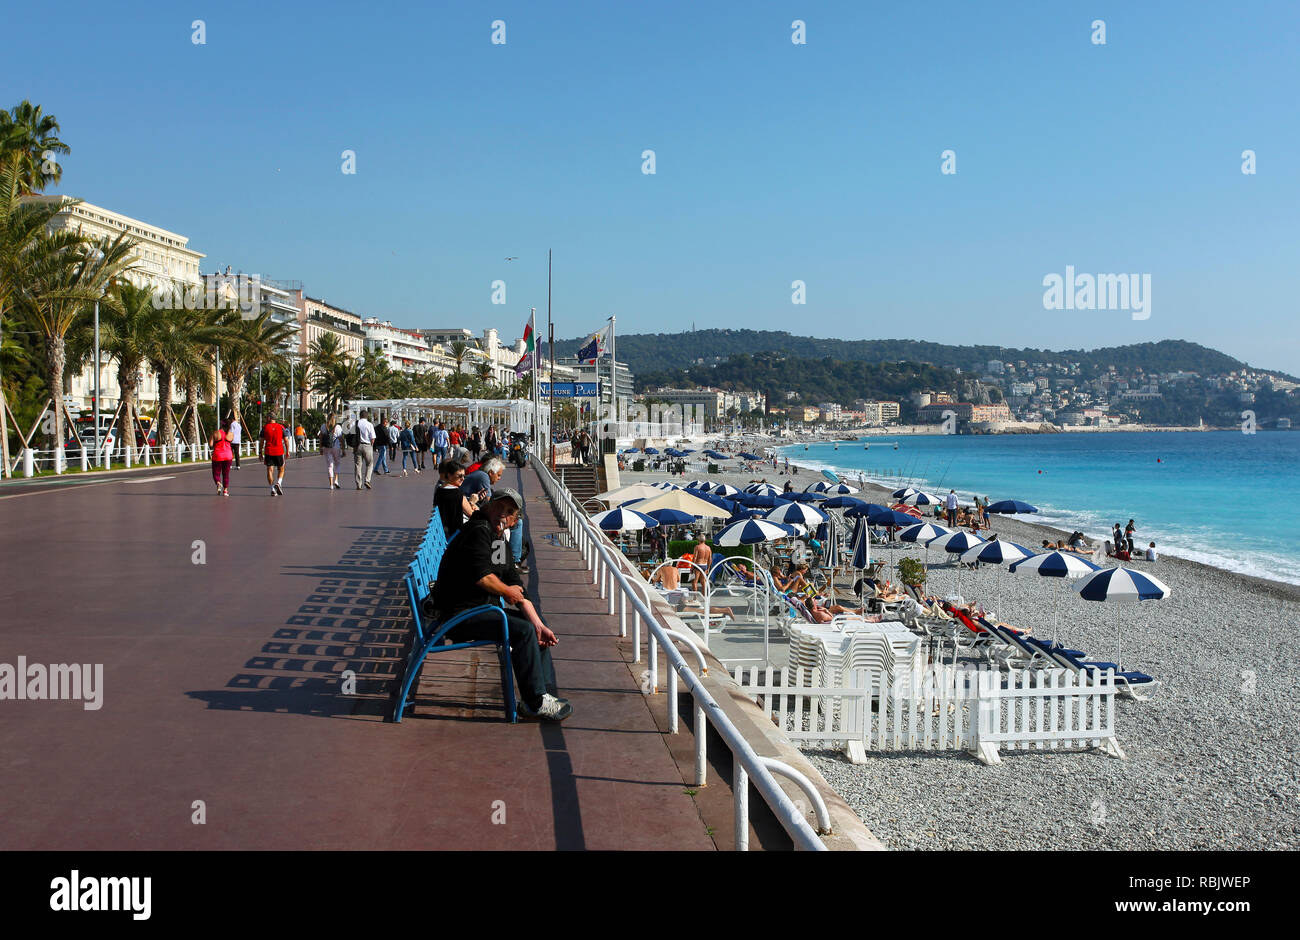 Bild auf den Strand und die Promenade Des Winkel, die entlang der Mittelmeer führt an der Cote d'Azur (Französische Riviera) in Nizza, Frankreich Stockfoto